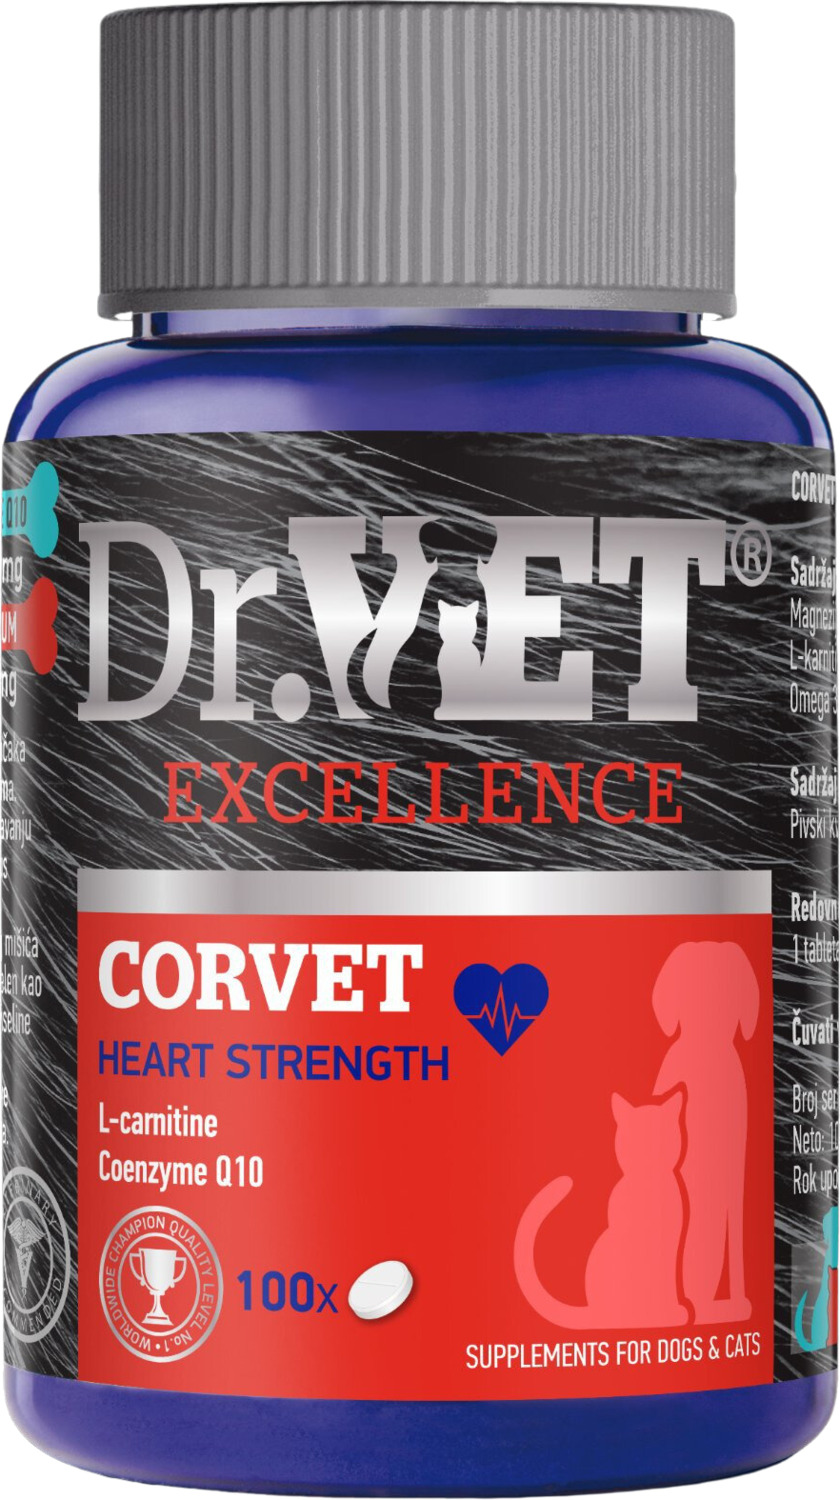 Dr. Vet Corvet tablete pentru sprijinirea funcției cardiace